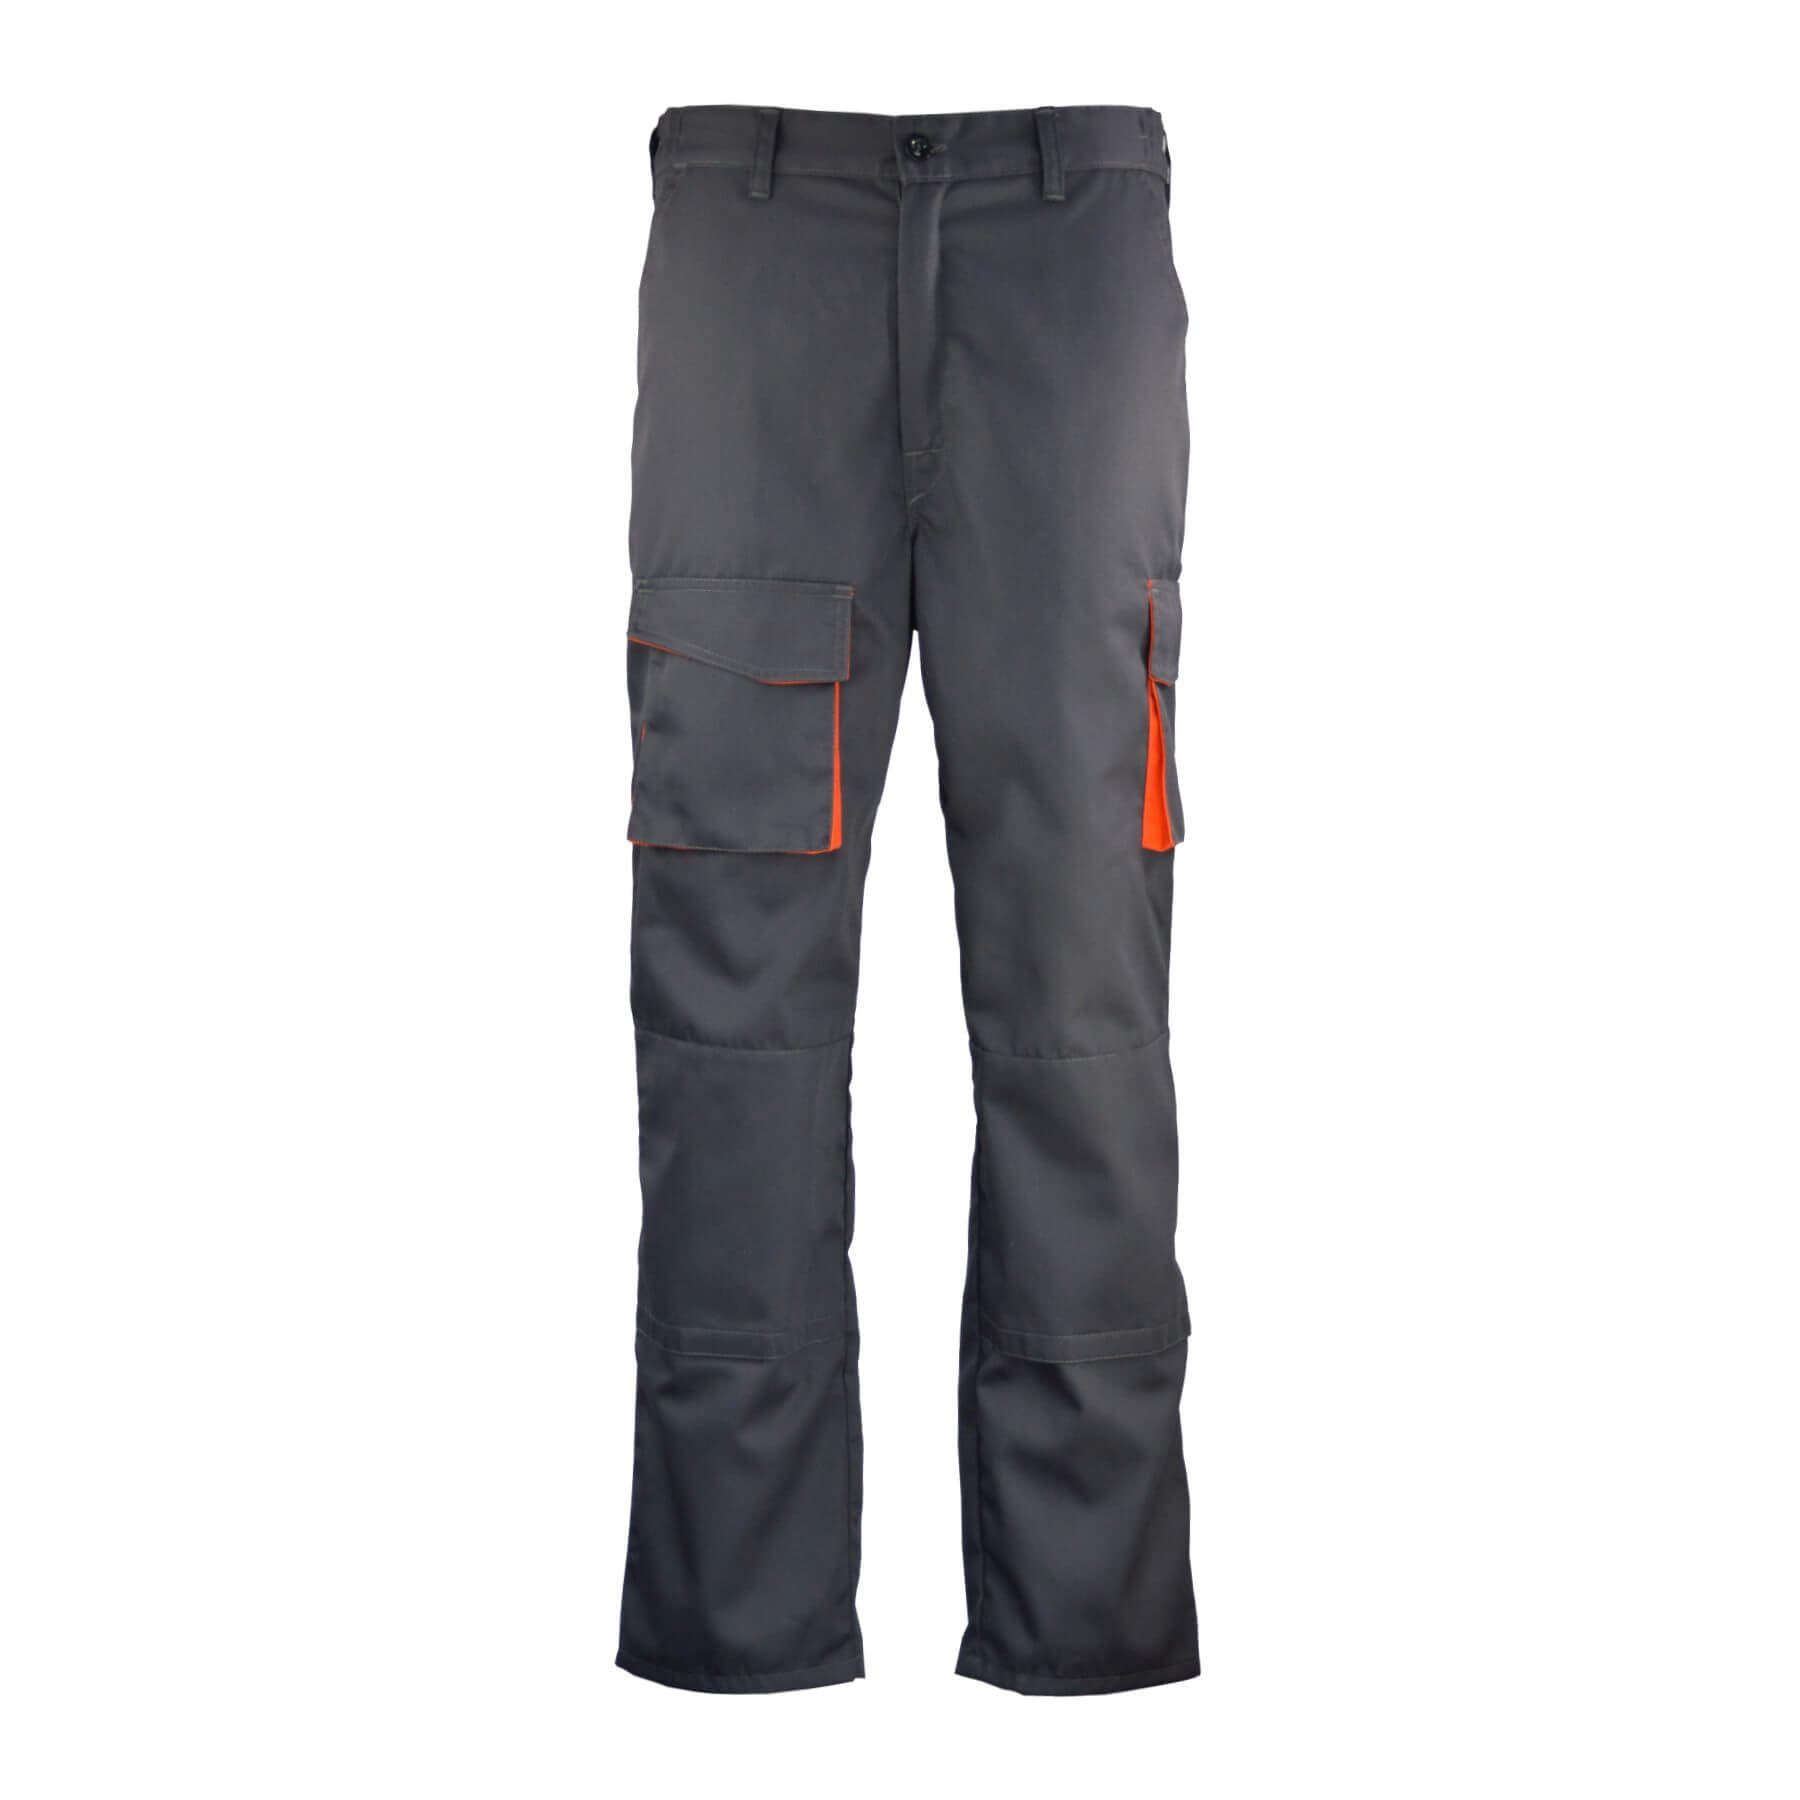 schwarz/grau Qualität Farbig Stoffeinsätze Grau/Orange Arbeitshose Cargohose 2 elastische workawear Top